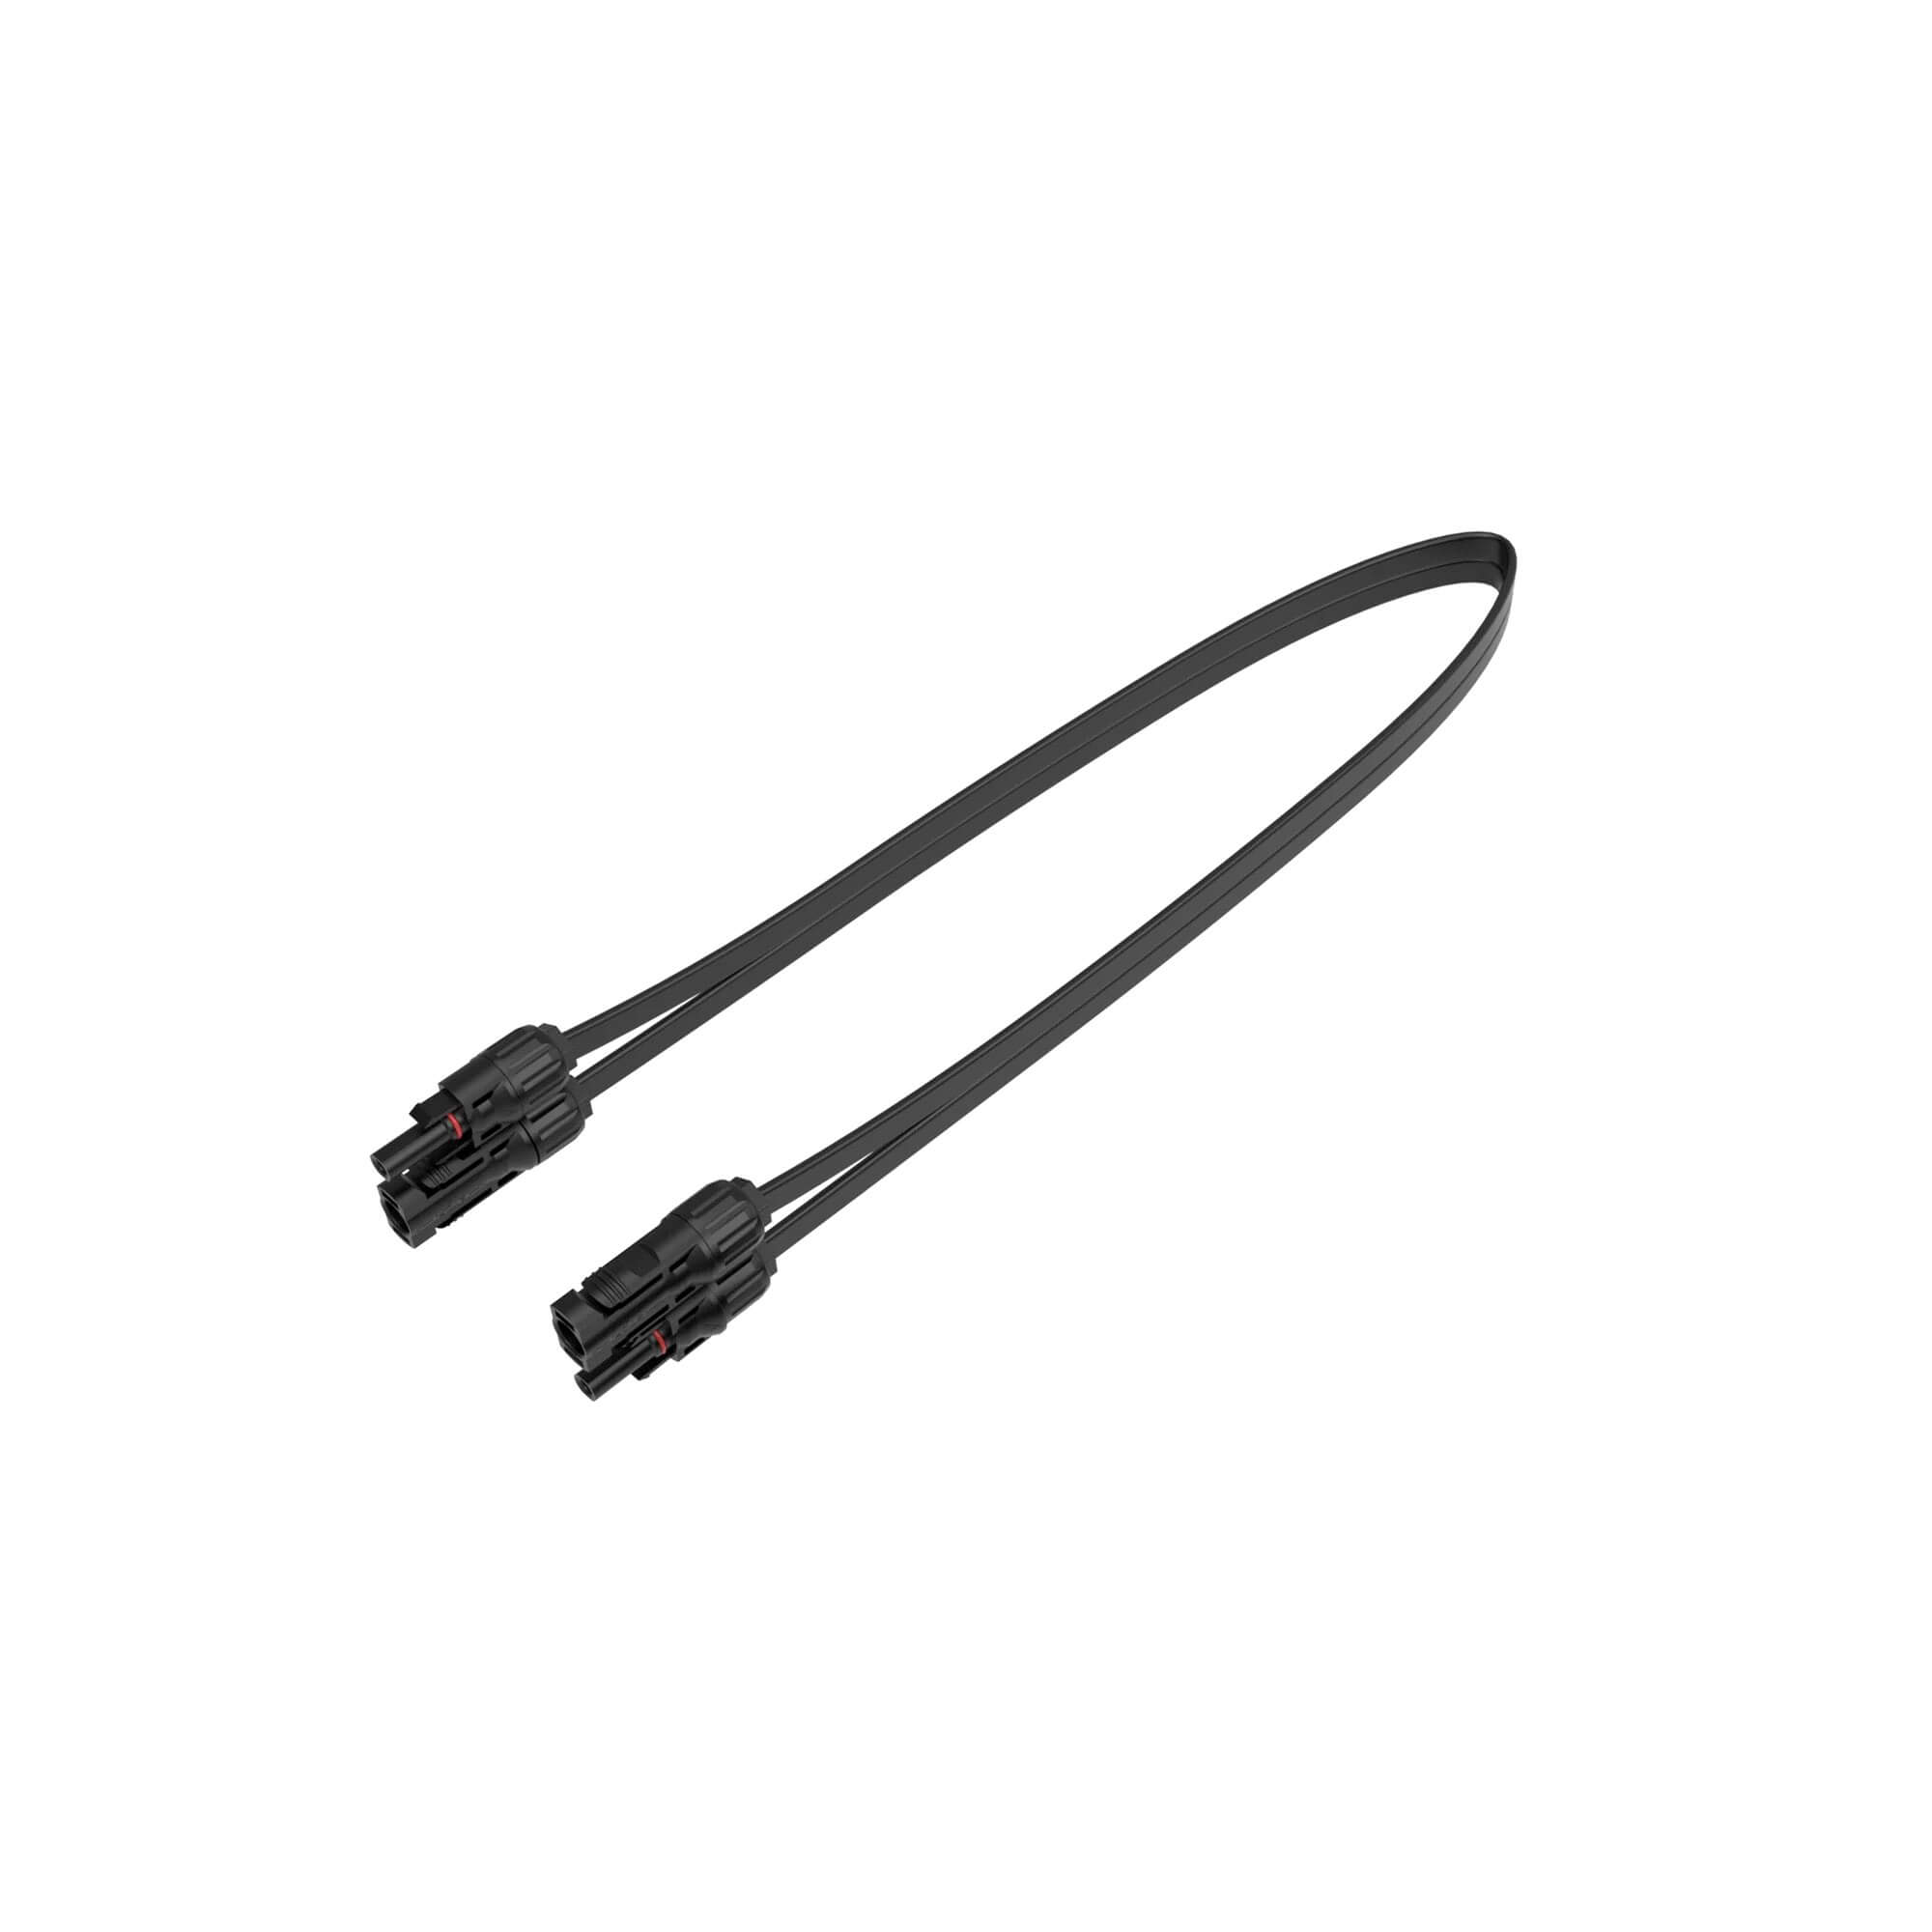 EcoFlow Super Flat MC4 Cable - плосък удължителен кабел за свързване на EcoFlow Microinverter към EcoFlow соларни панели (50 см) (черен)